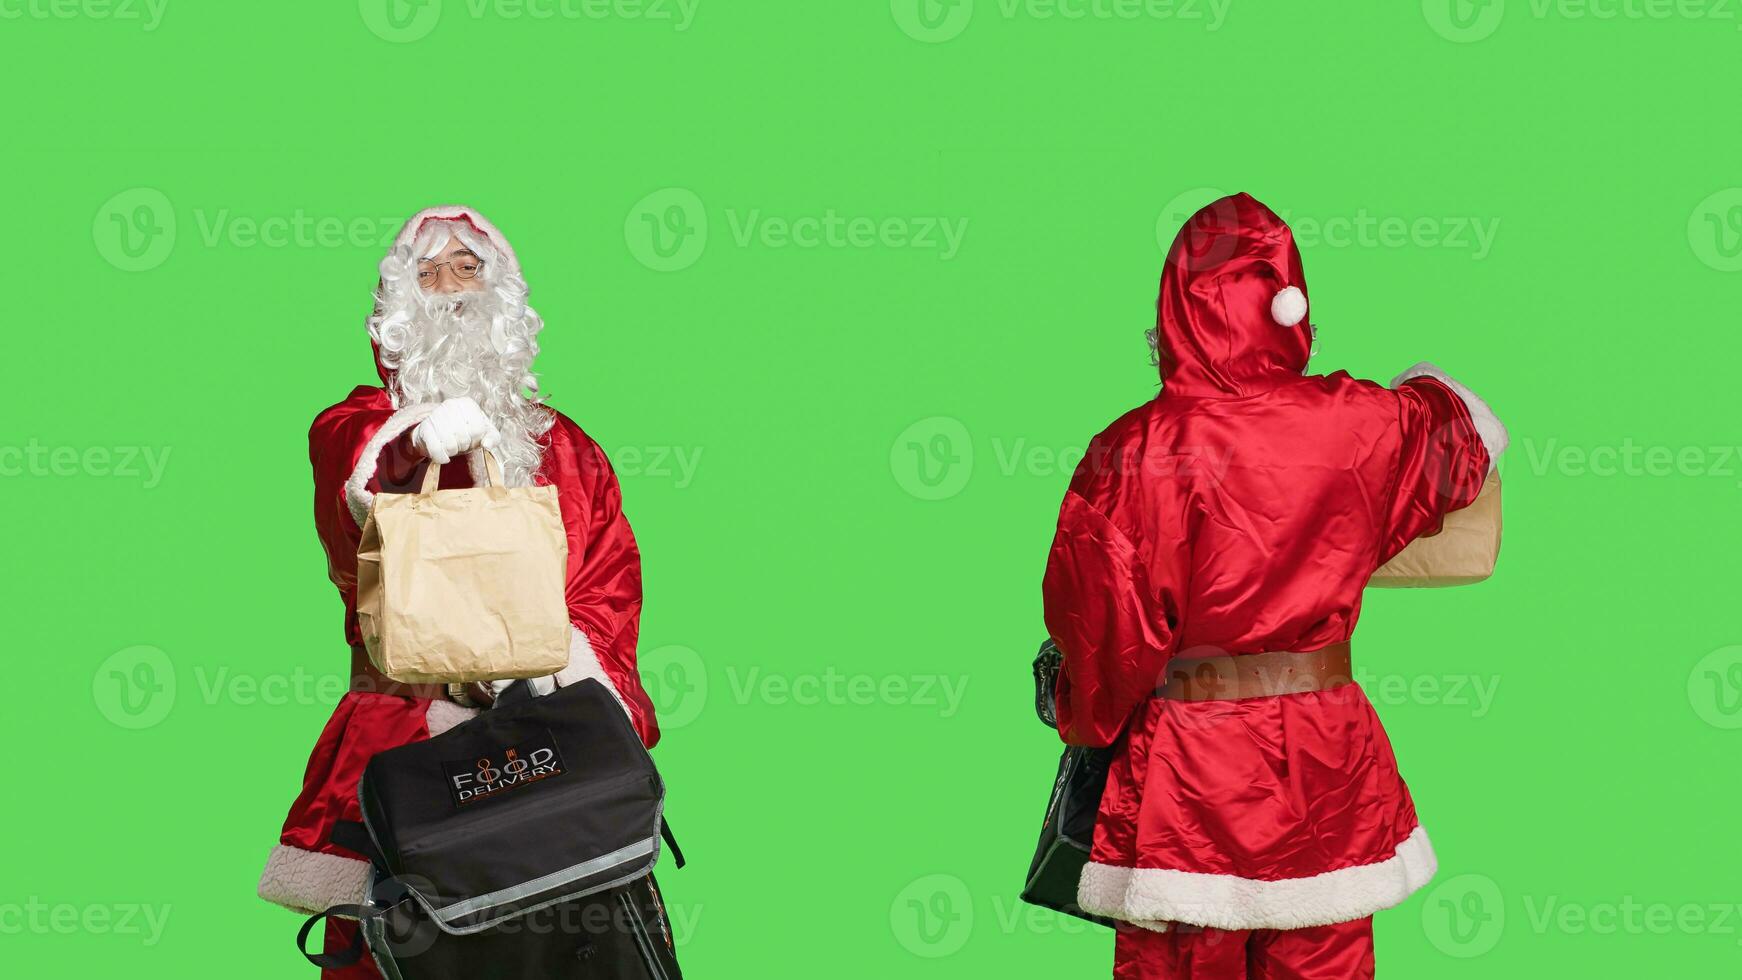 froh Santa claus Person liefern Essen im Papier Tasche, Tragen Thermal- Rucksack während er ist tragen traditionell Urlaub Kostüm. Mann im festlich rot und Weiß Anzug, grüner Bildschirm Hintergrund. foto